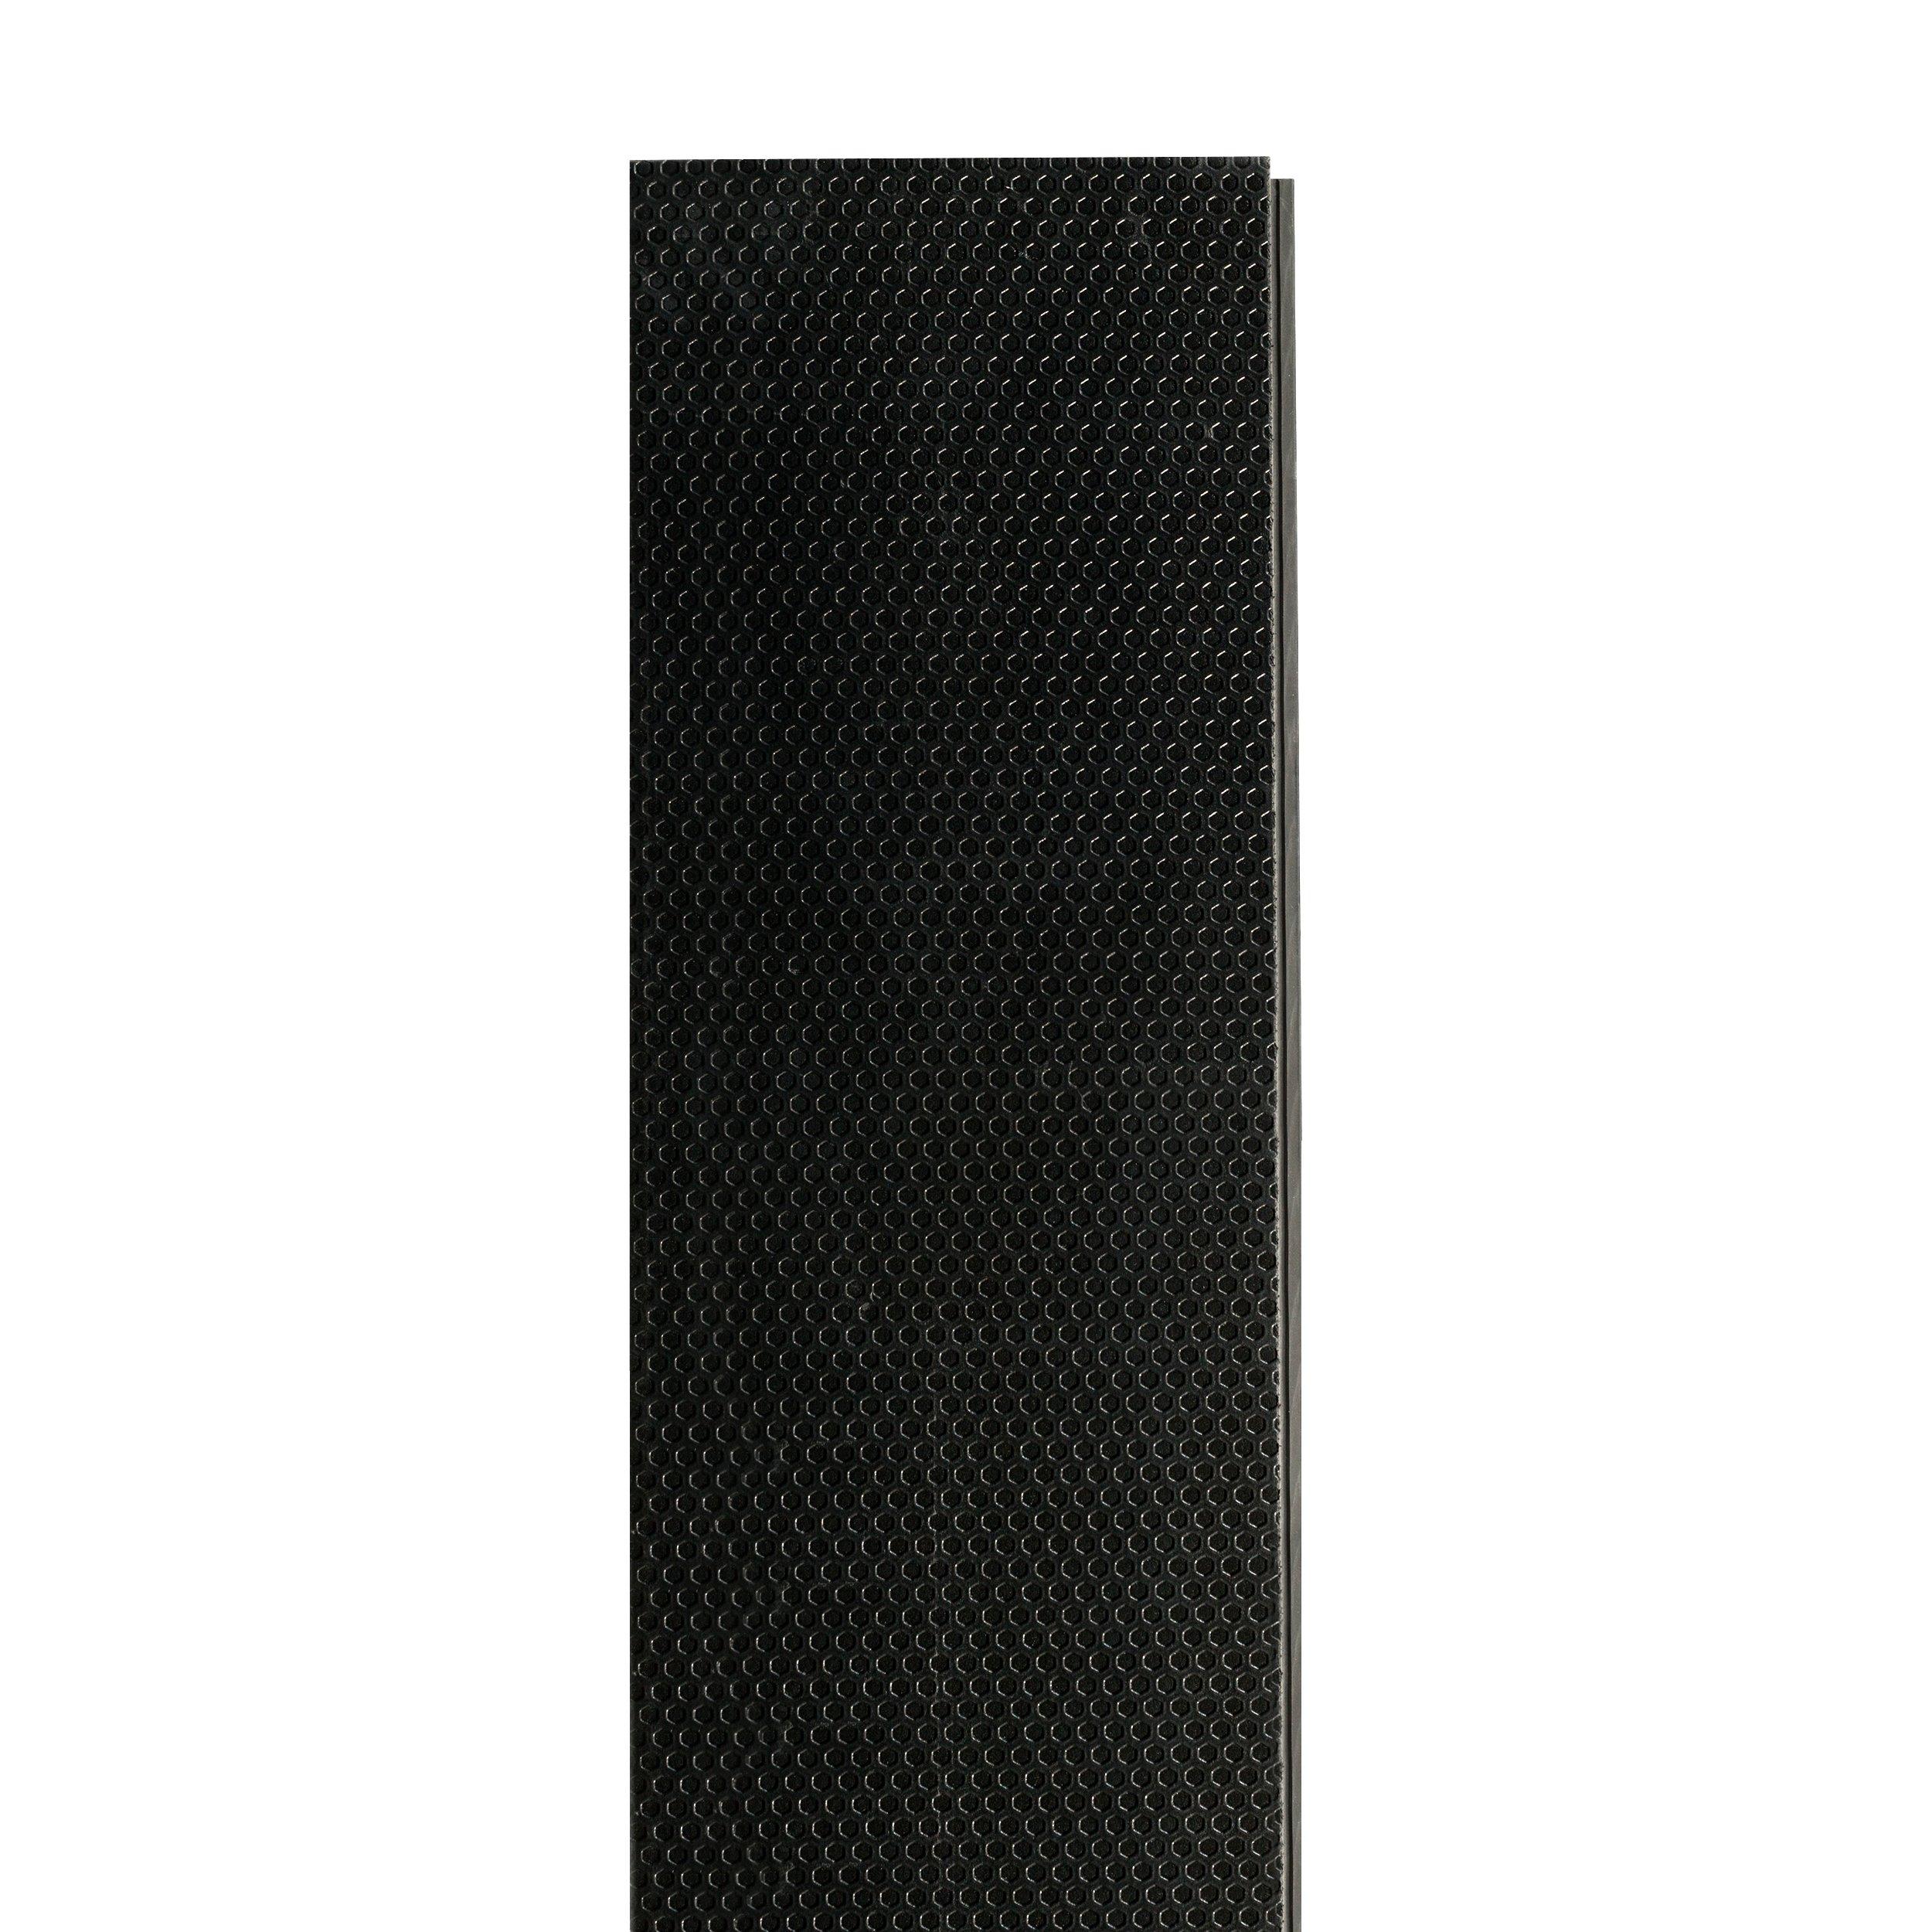 Bayou Breeze Rigid Core Luxury Vinyl Plank - Foam Back